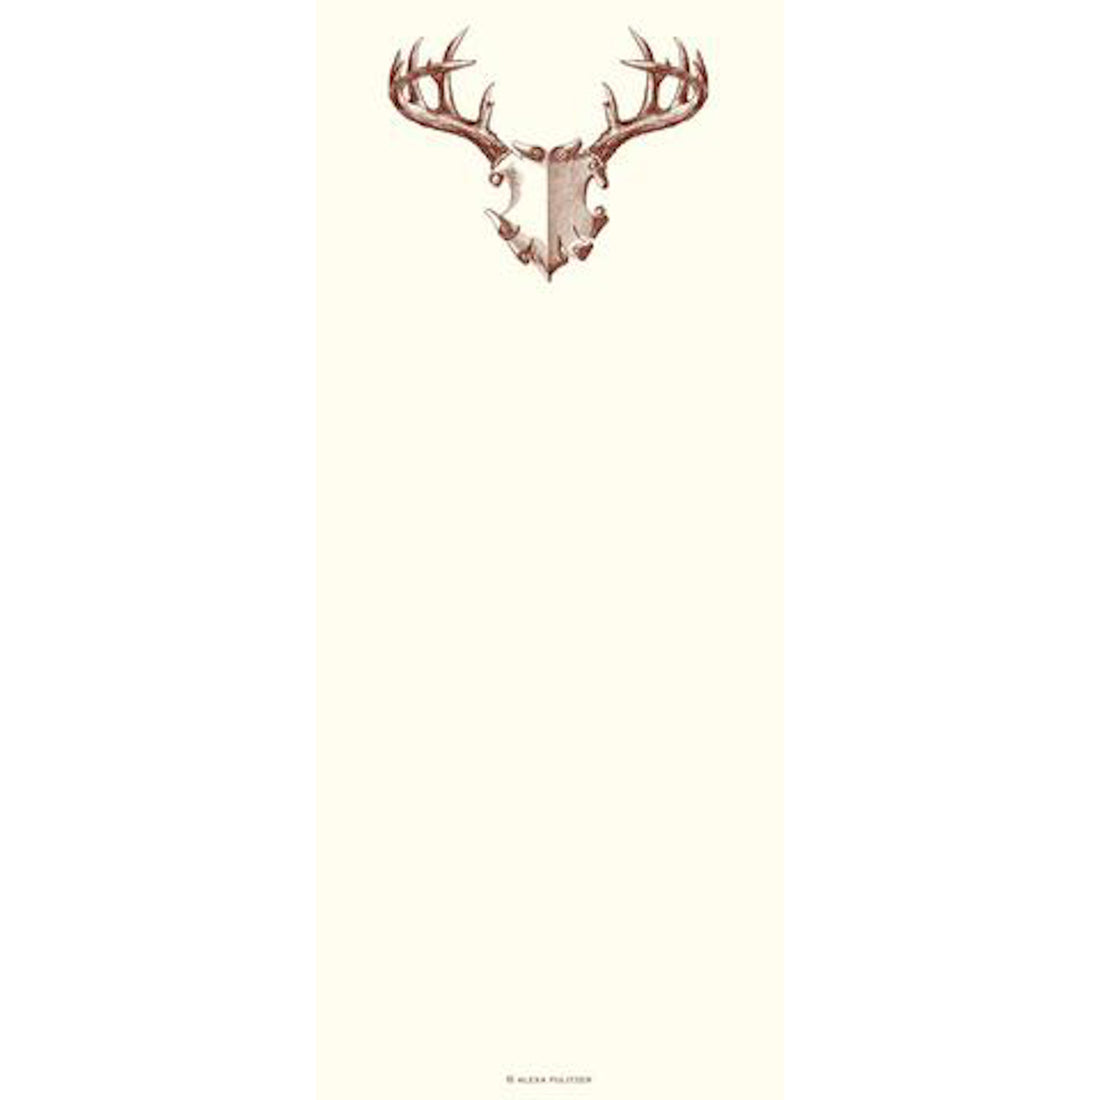 Illustration of a deer&